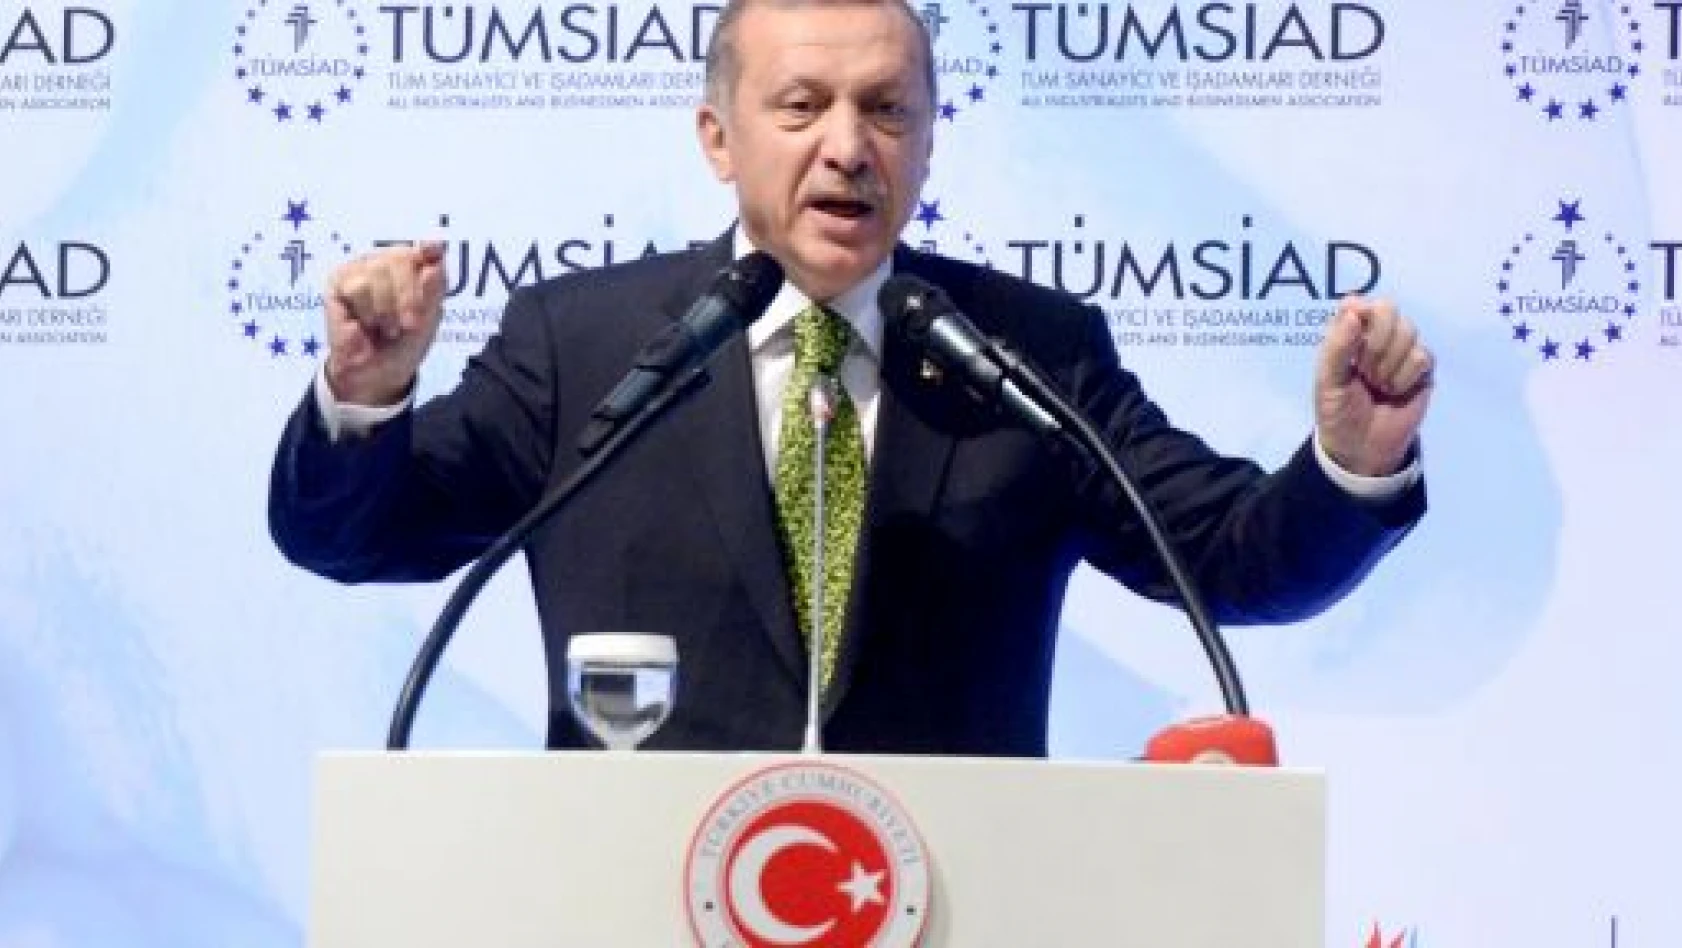 Başbakan Erdoğan: Gençlere, darbe dönemlerini iyi anlatmak gerekiyor